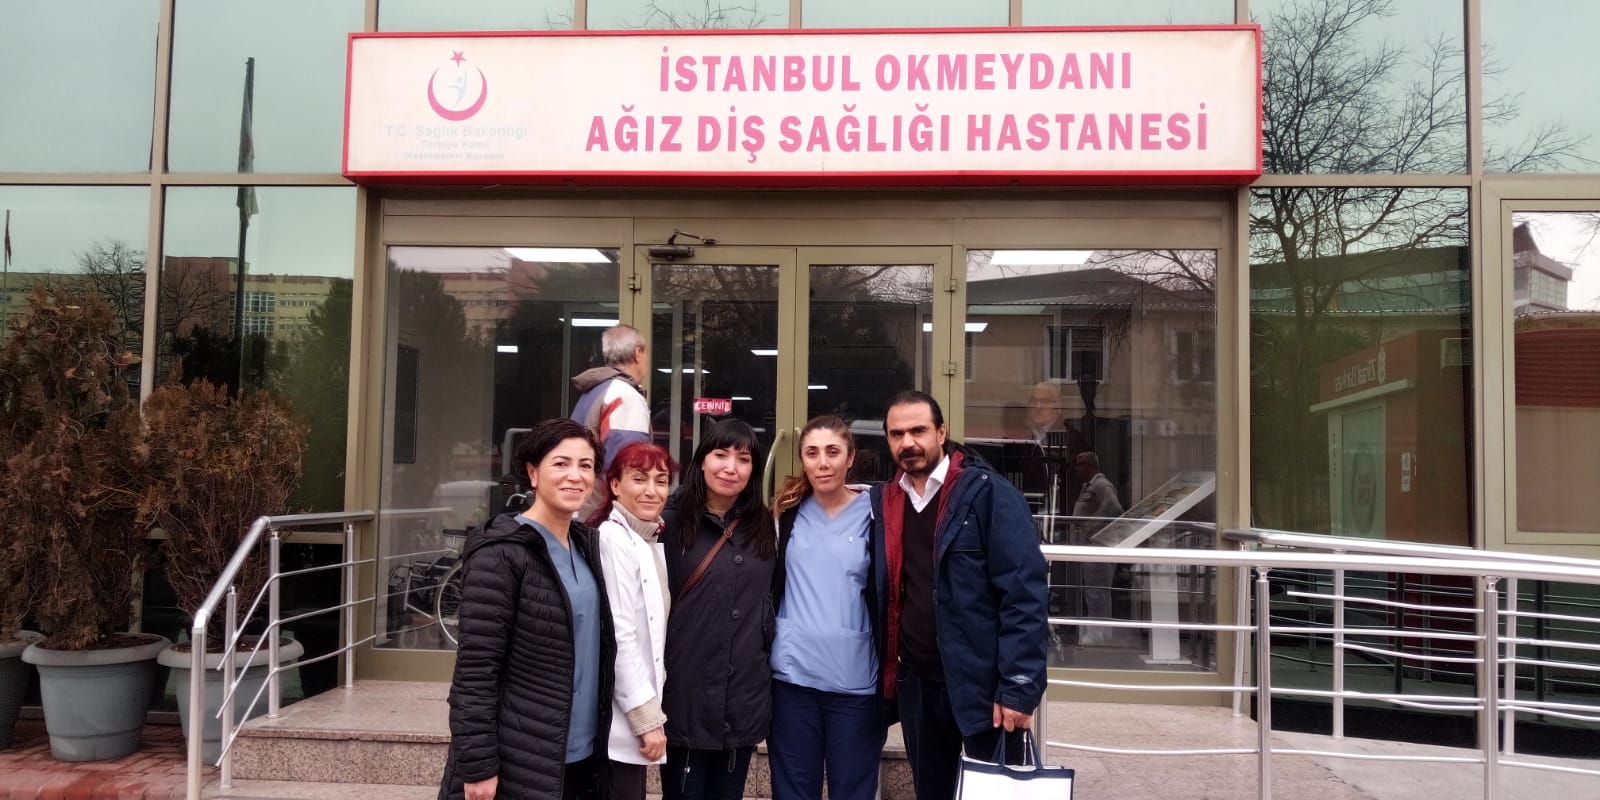 Okmeydanı Ağız Diş Sağlığı Hastanesi’nde 22 Aralık İstanbul KESK Bölge Mitingi Çalışması Yaptık